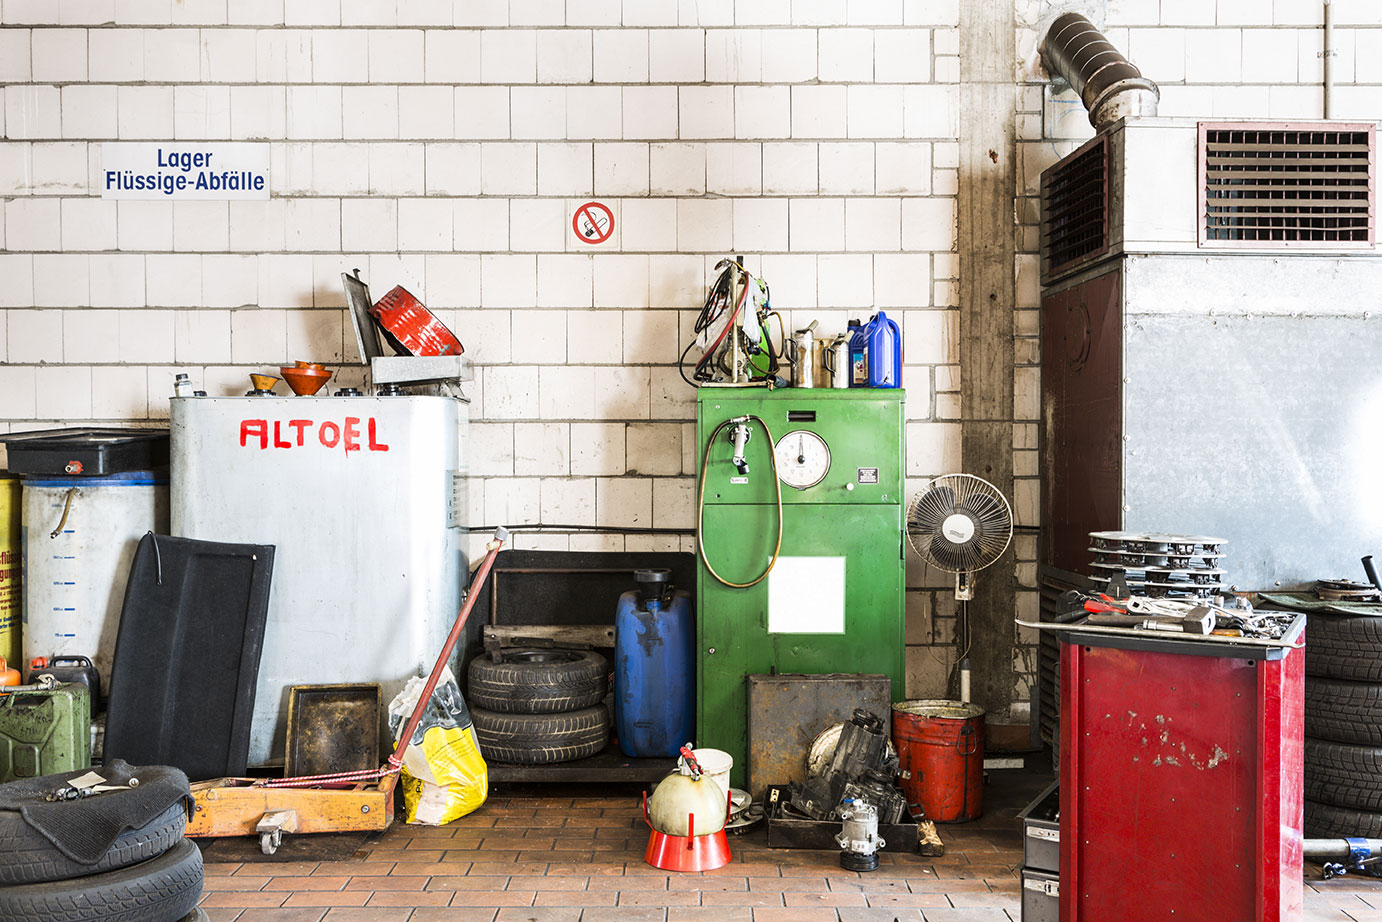 Auf dem Bild sieht man eine unaufgeräumte Garage mit einem großen Behälter gefüllt mit Altöl.